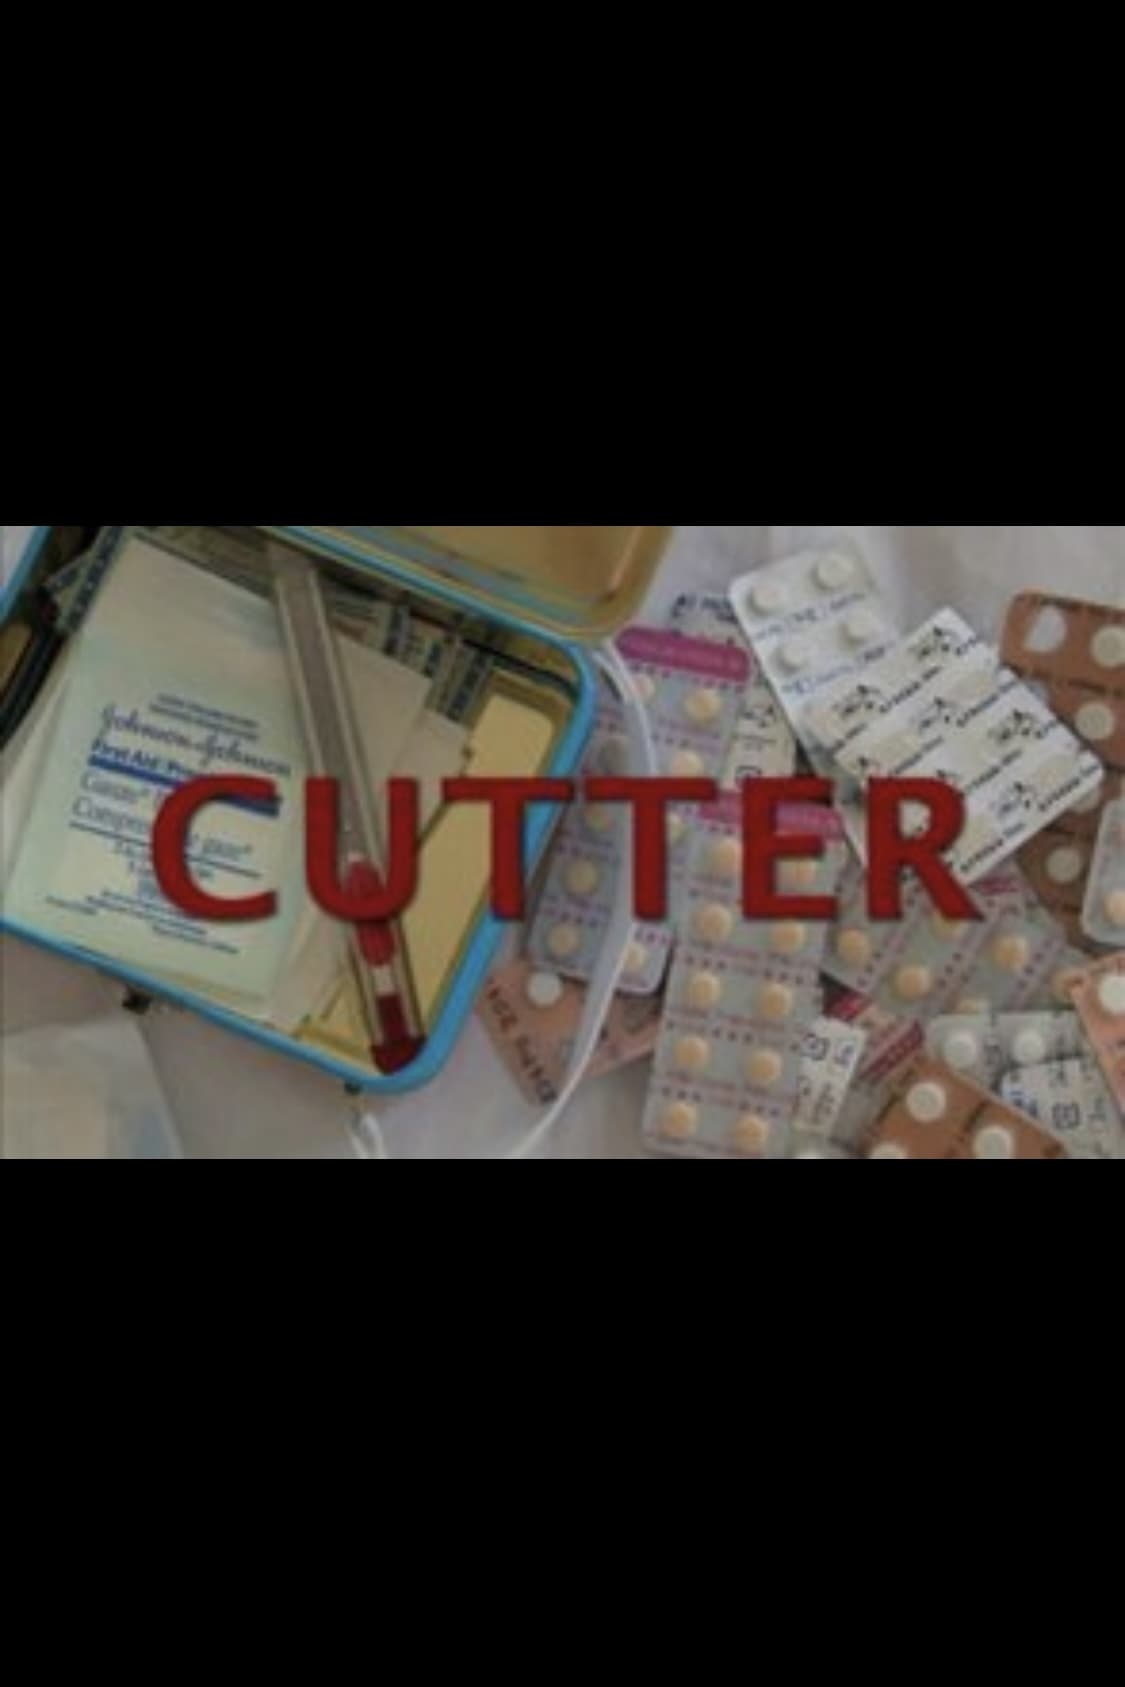 Cutter